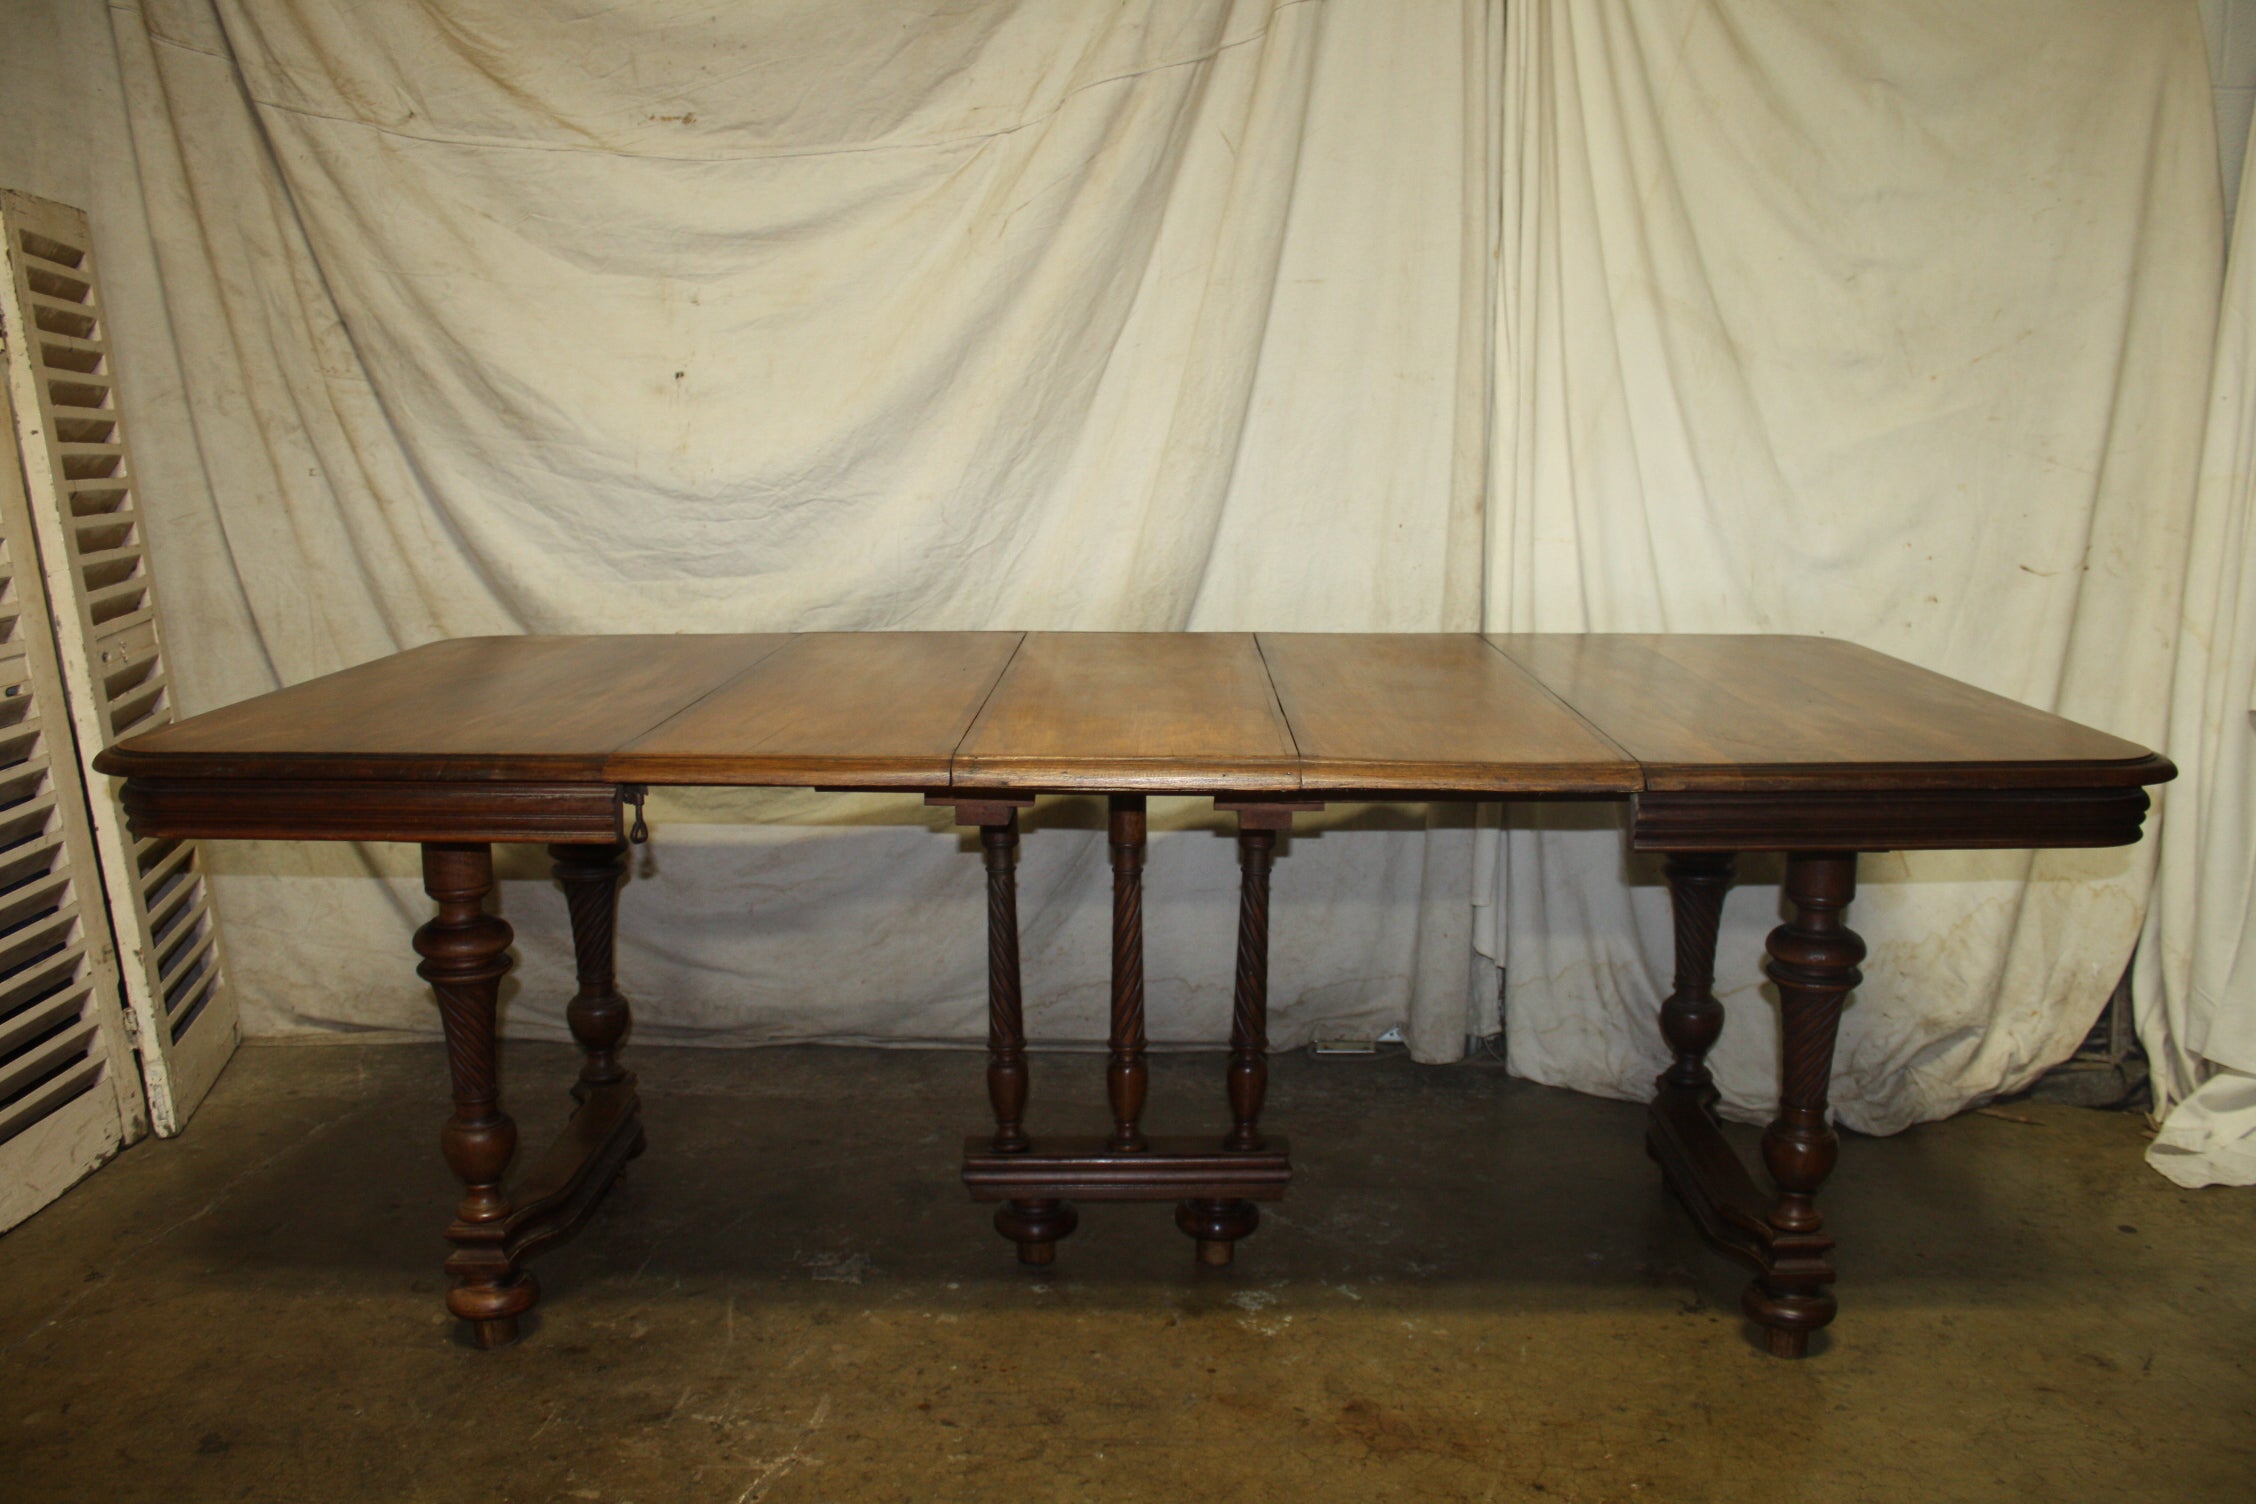 Cette table a 3 extensions, elle peut donc être une petite et une grande table. Très pratique pour l'espace et l'objectif. Belle couleur noisette du bois.